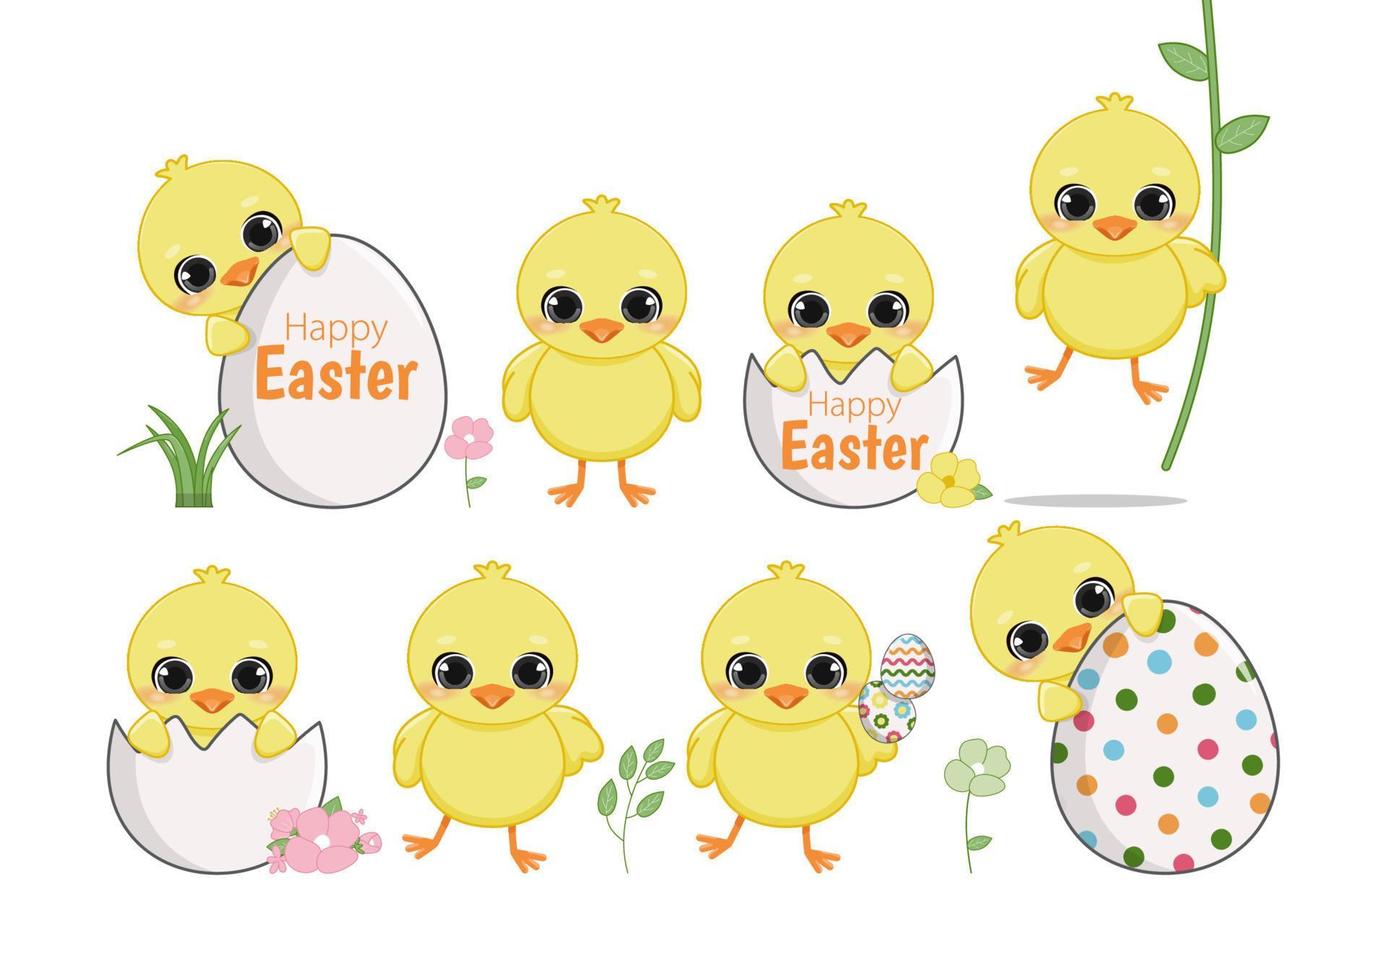 contento Pascua de Resurrección día con conjunto de linda pollitos gracioso amarillo pollo en agrietado huevos y huevos caparazón, dibujos animados caracteres, vector ilustración, plano diseño